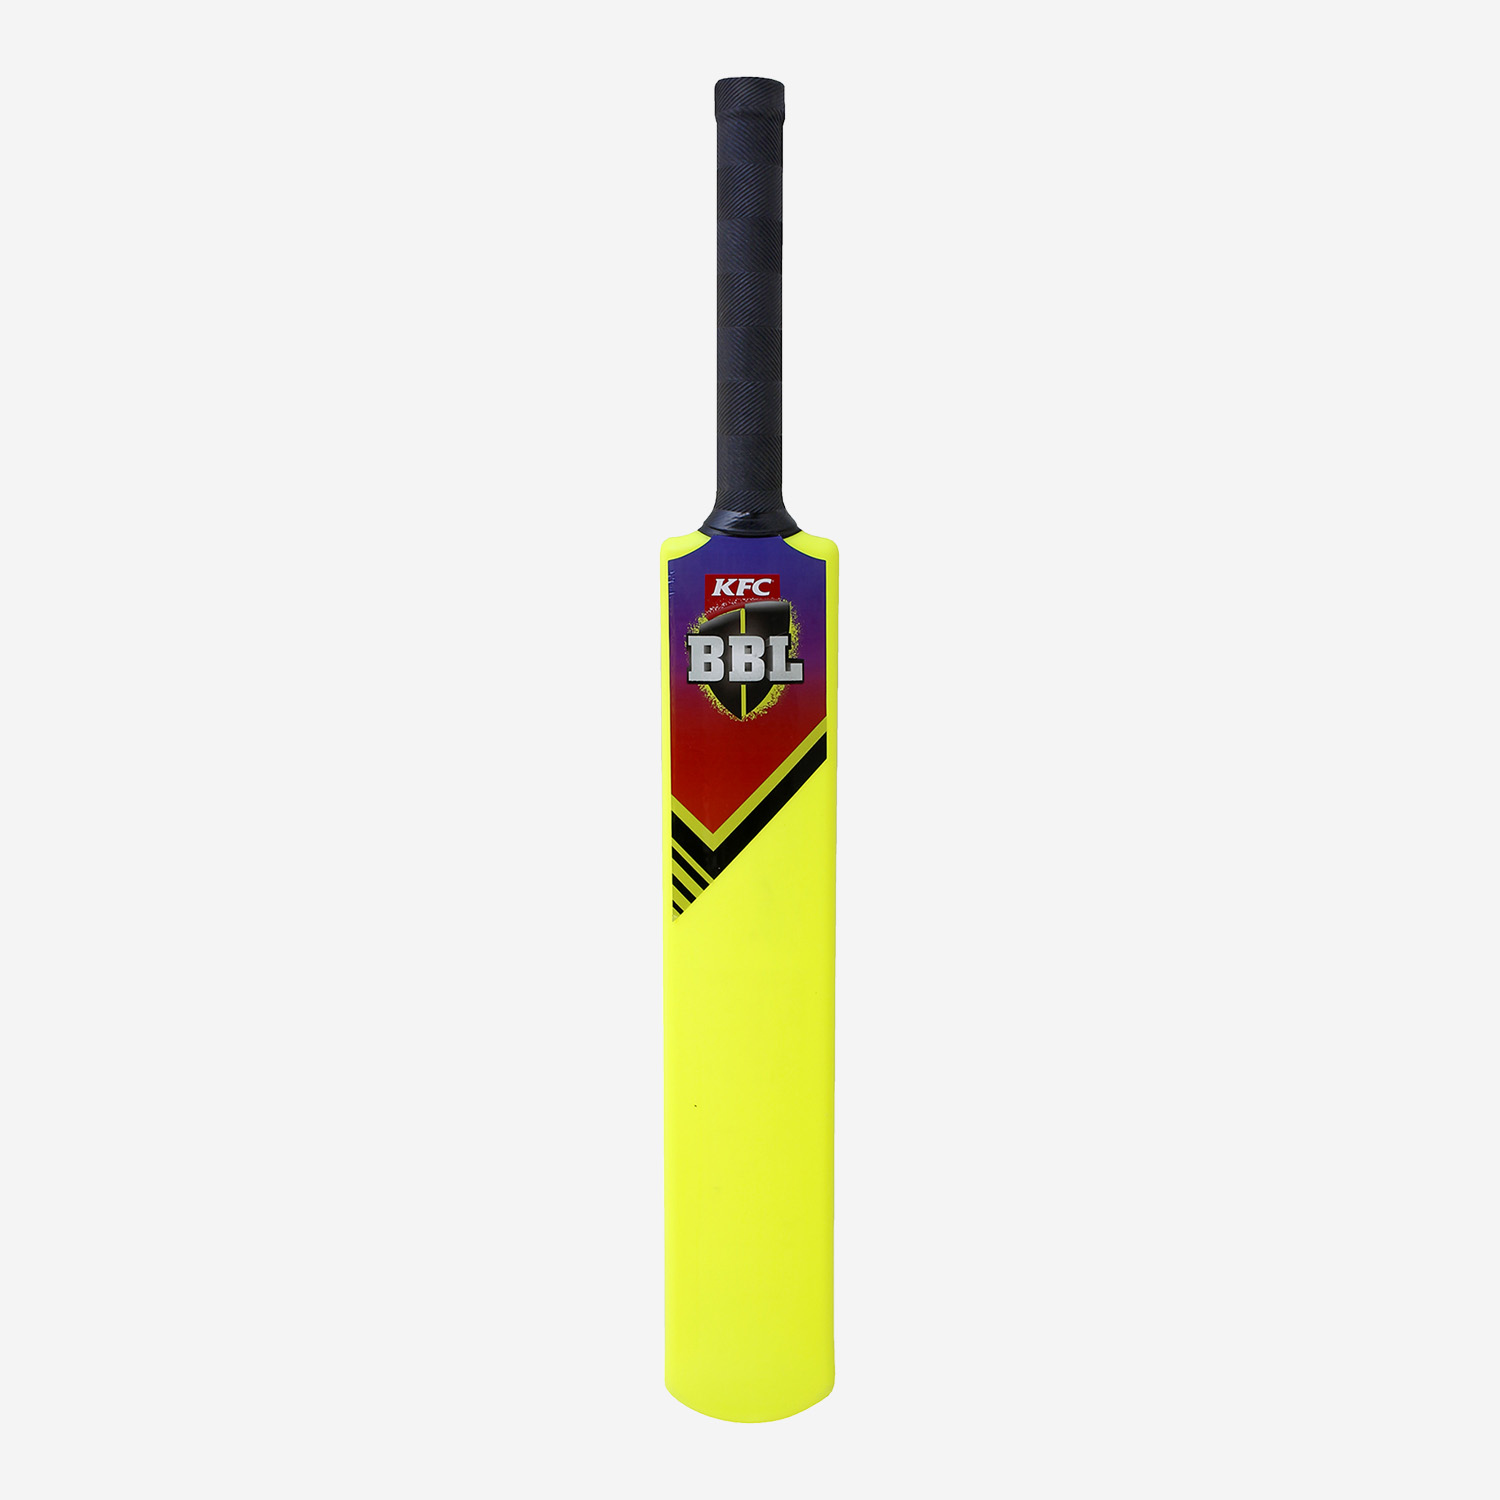 BBL plastic cricket bat